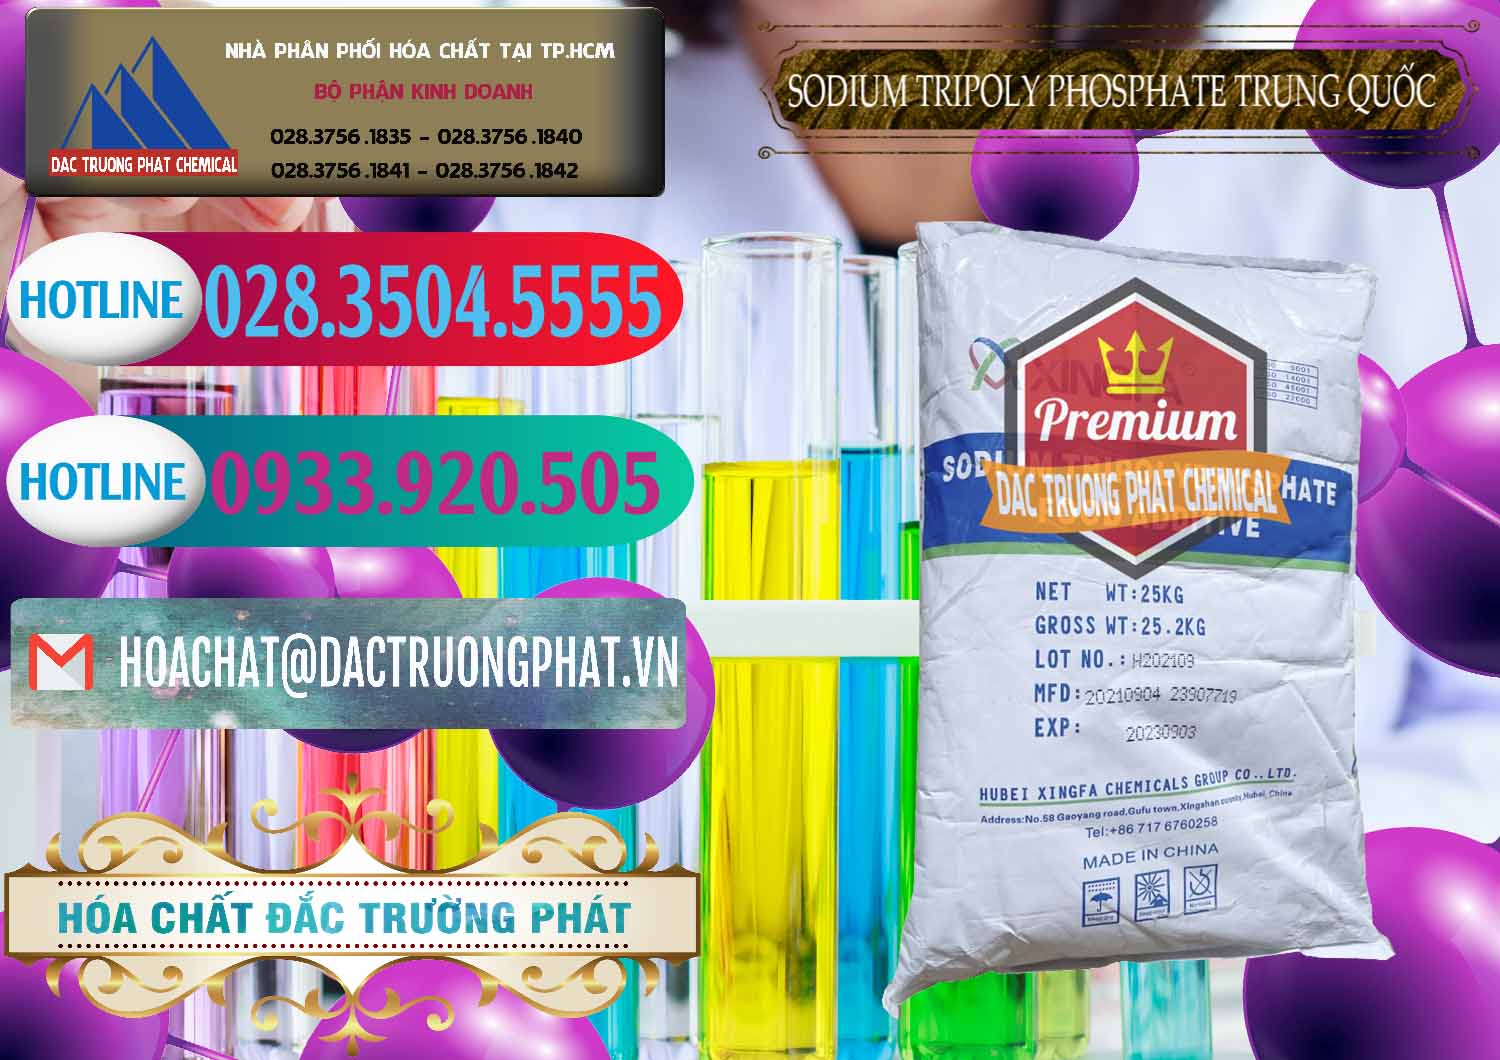 Chuyên bán _ phân phối Sodium Tripoly Phosphate - STPP 96% Xingfa Trung Quốc China - 0433 - Cung ứng ( phân phối ) hóa chất tại TP.HCM - truongphat.vn